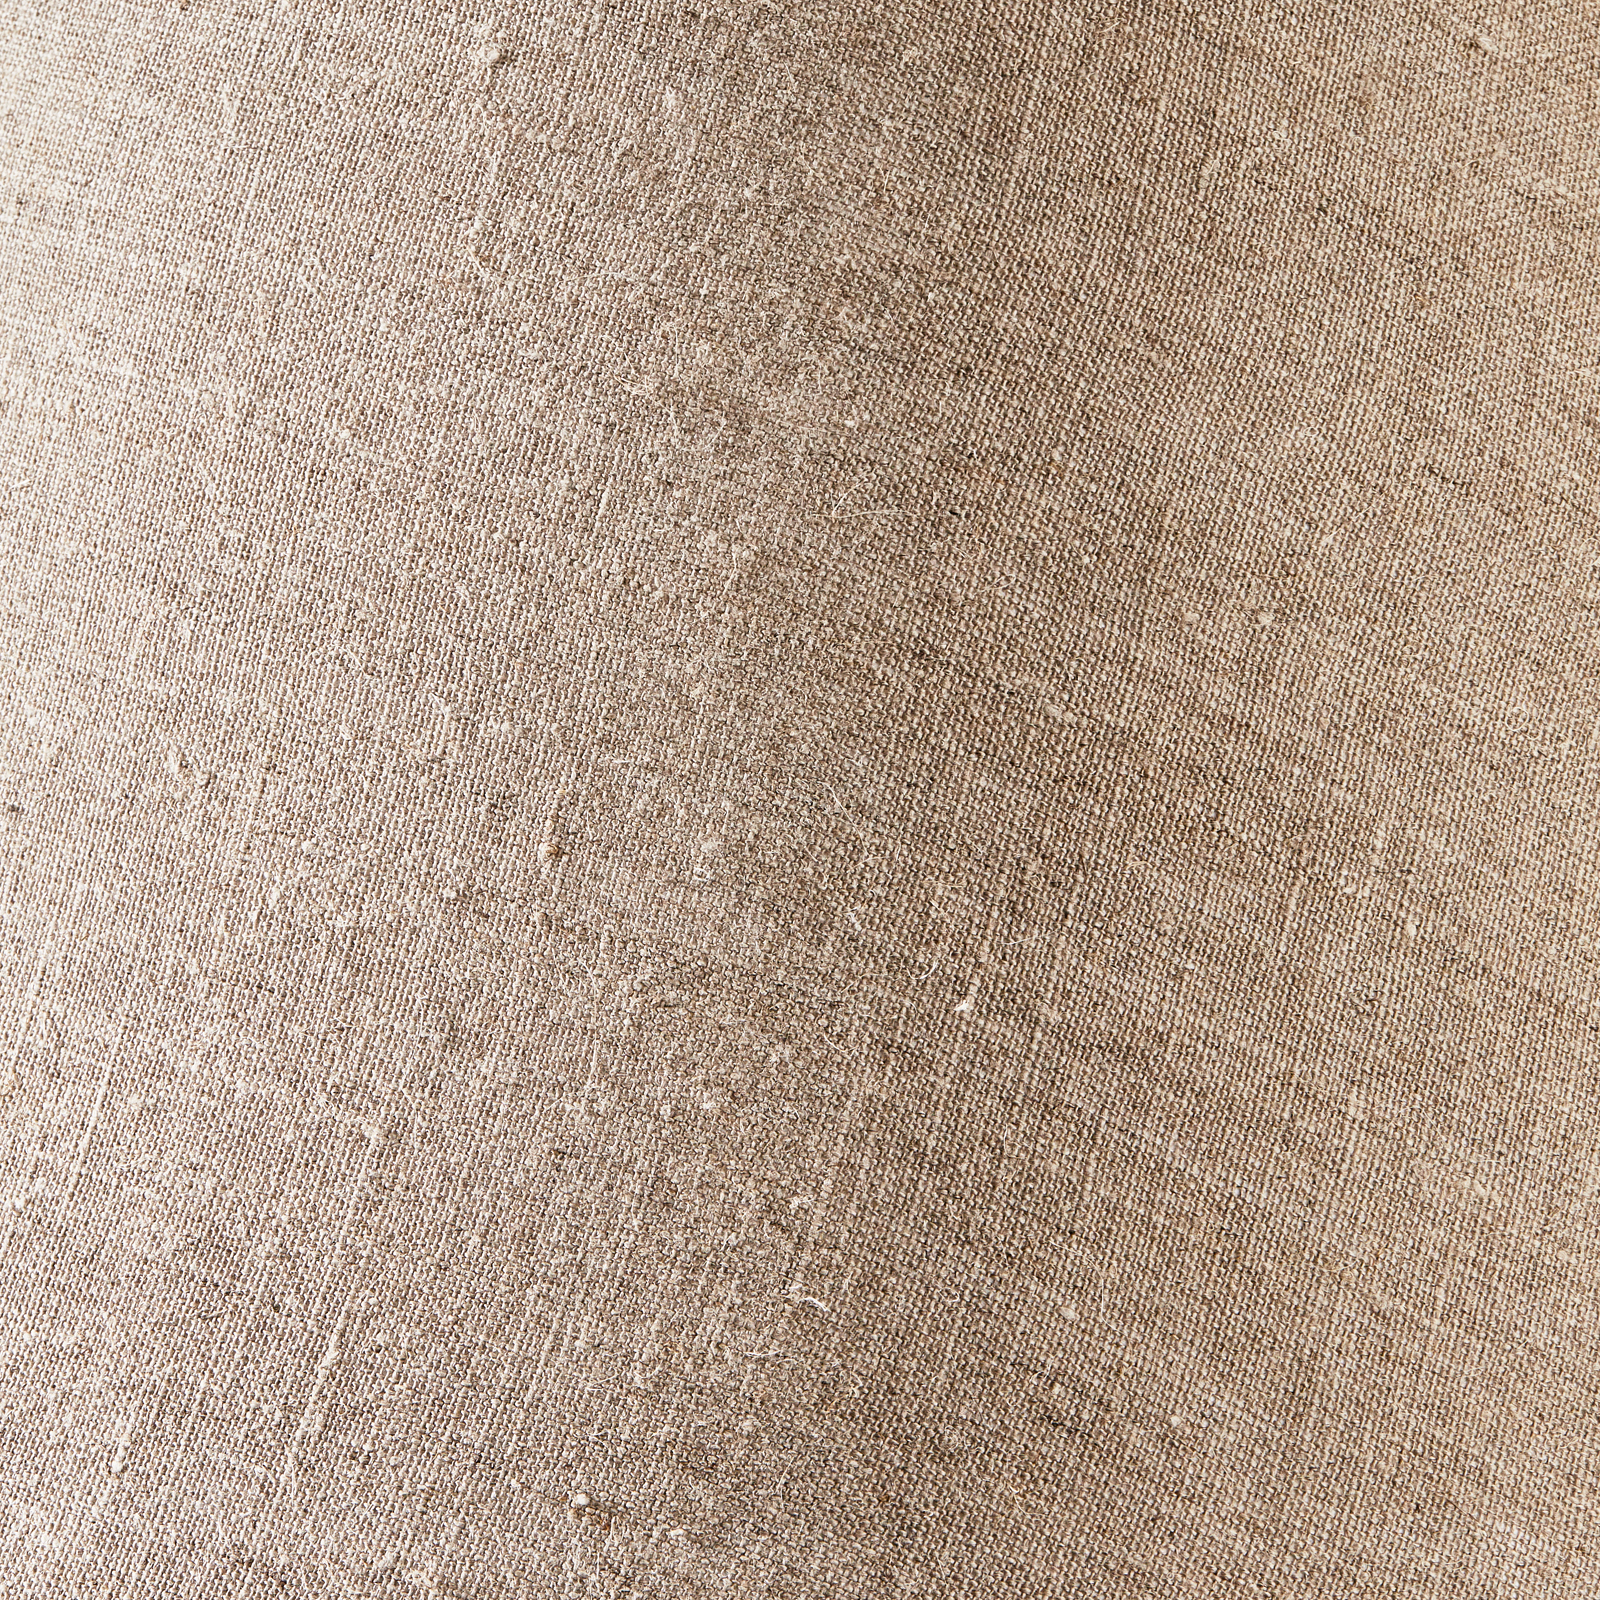 Rectangular Lampshade flax 15x60